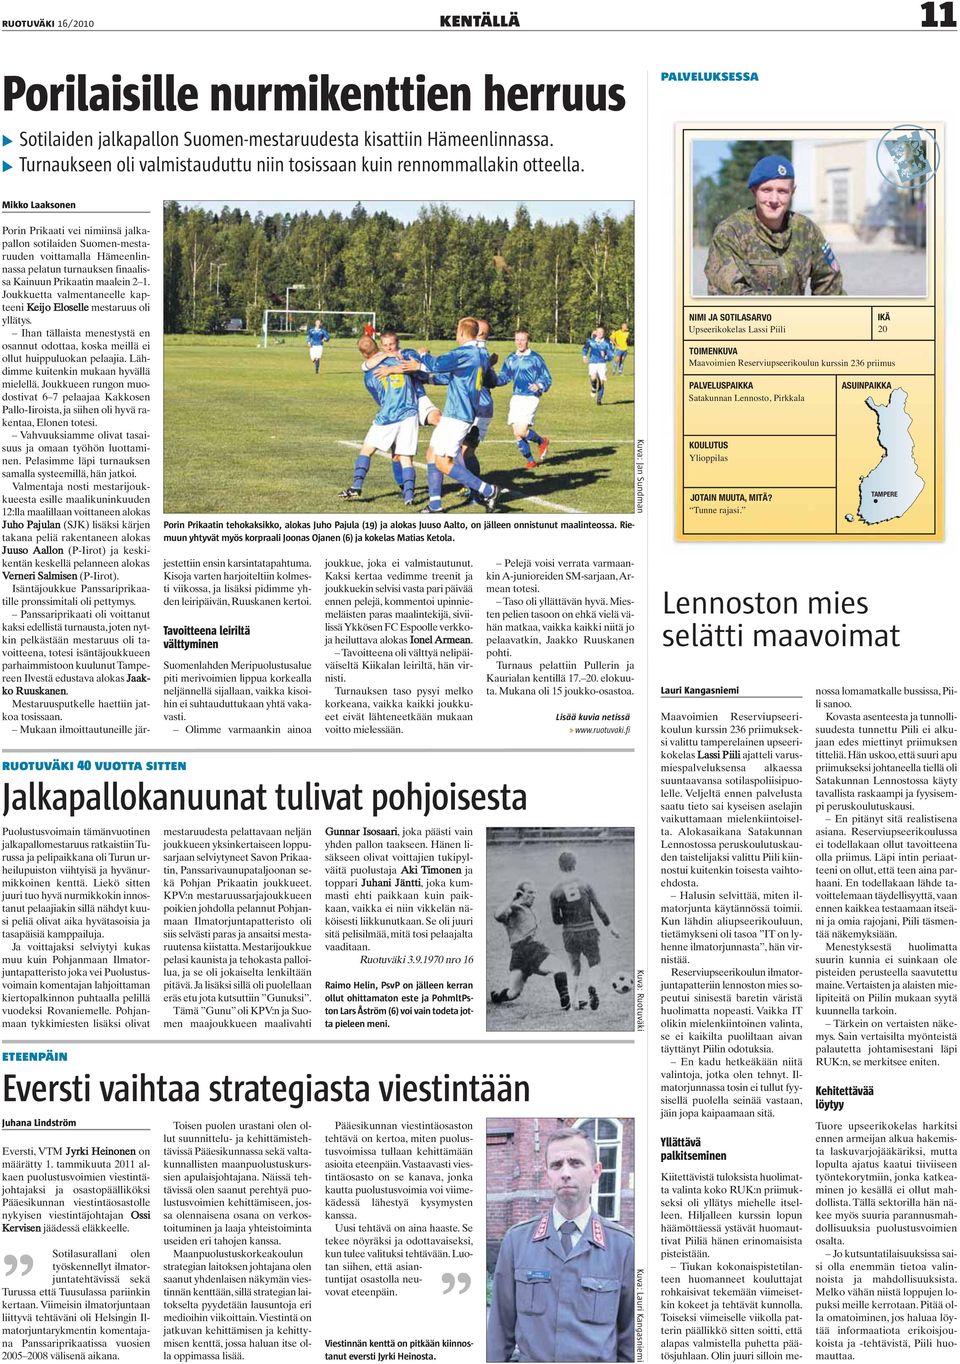 Mikko Laaksonen ruotuväki 40 vuotta sitten Puolustusvoimain tämänvuotinen jalkapallomestaruus ratkaistiin Turussa ja pelipaikkana oli Turun urheilupuiston viihtyisä ja hyvänurmikkoinen kenttä.